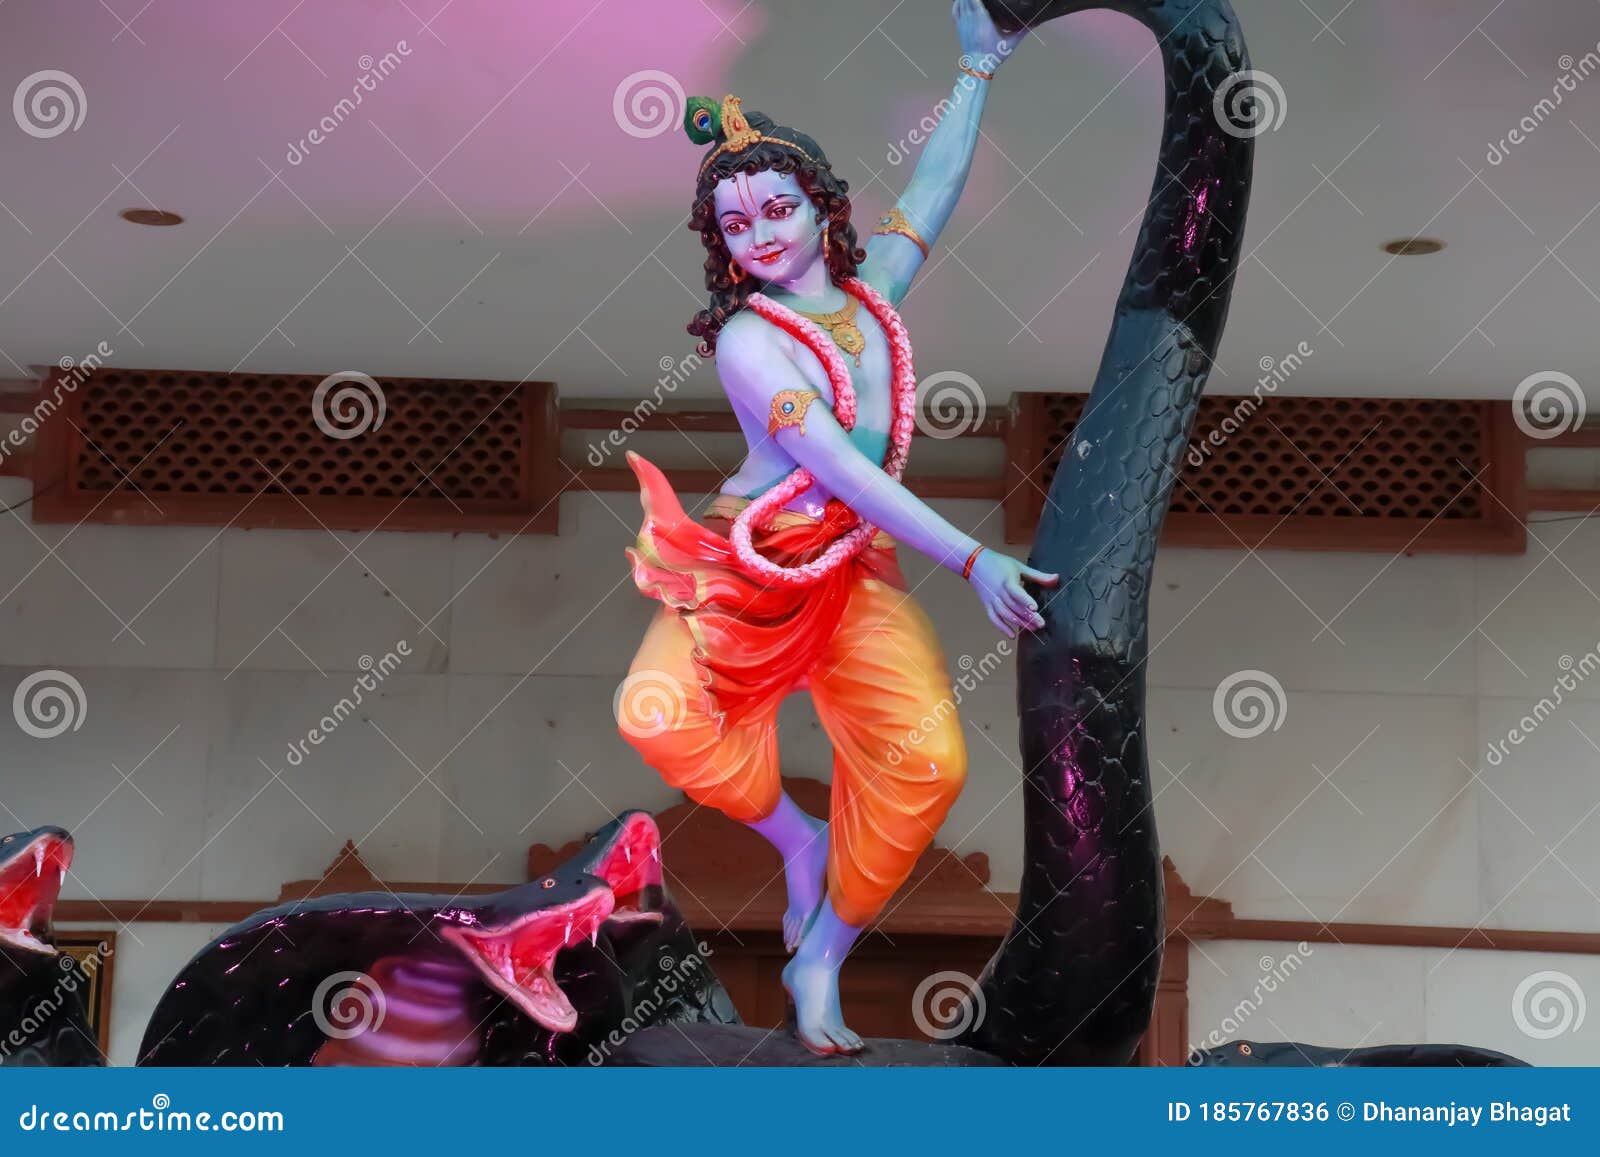 Lord Krishna dancing stock photo. Image of dancing, demon - 185767836